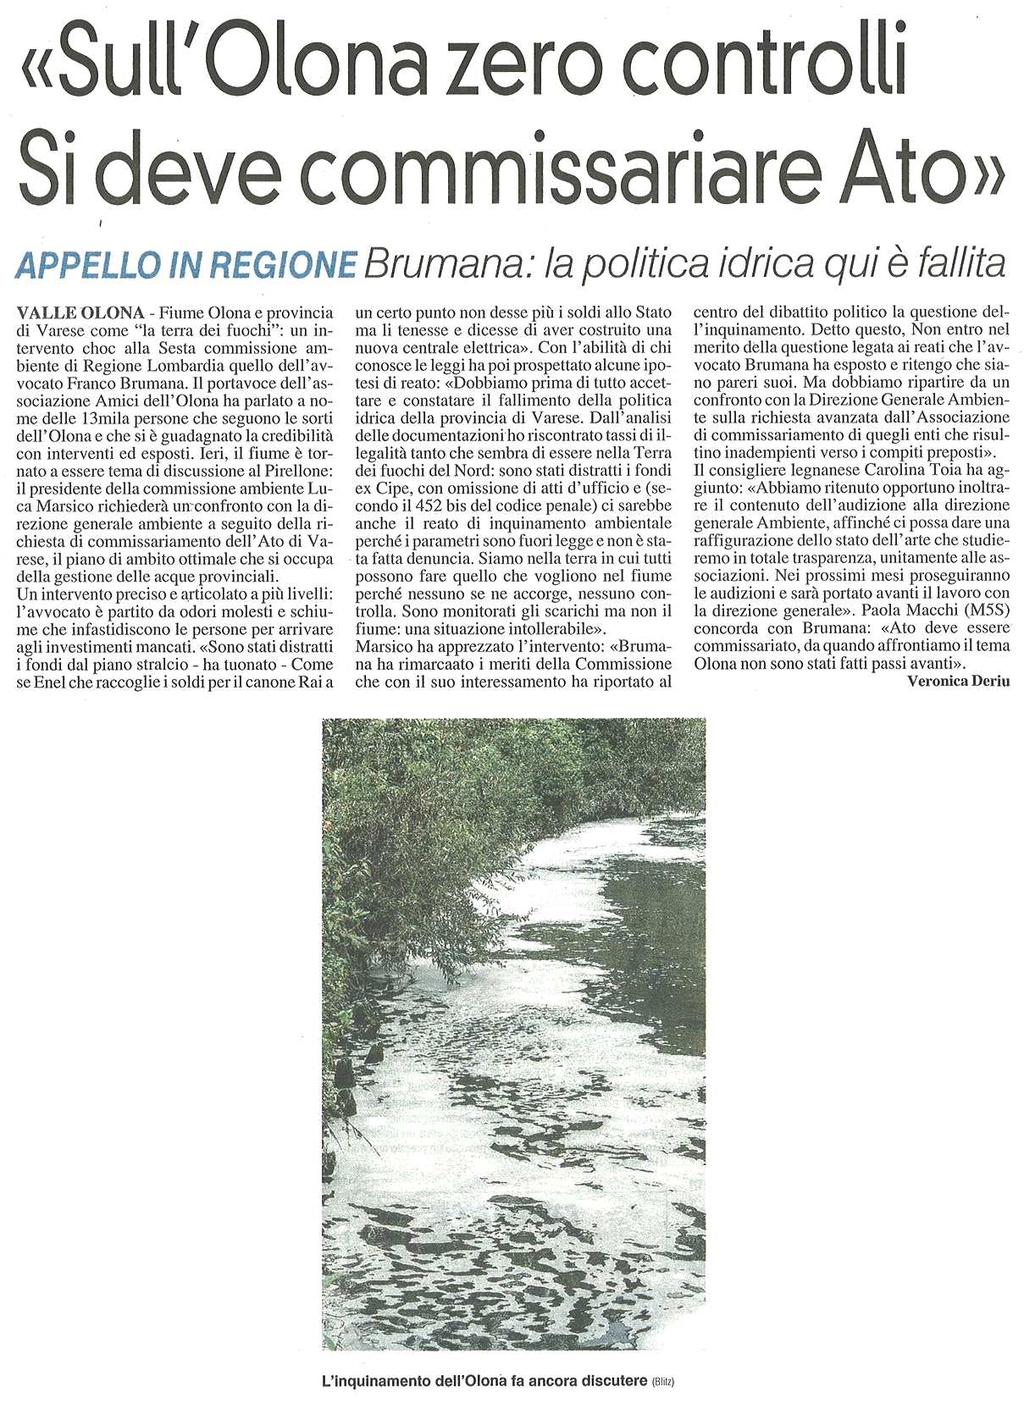 "SULL'OLONA ZERO CONTROLLI SI DEVE COMMISSARIARE ATO" Appello in Regione / Brumana: la politica idrica qui è